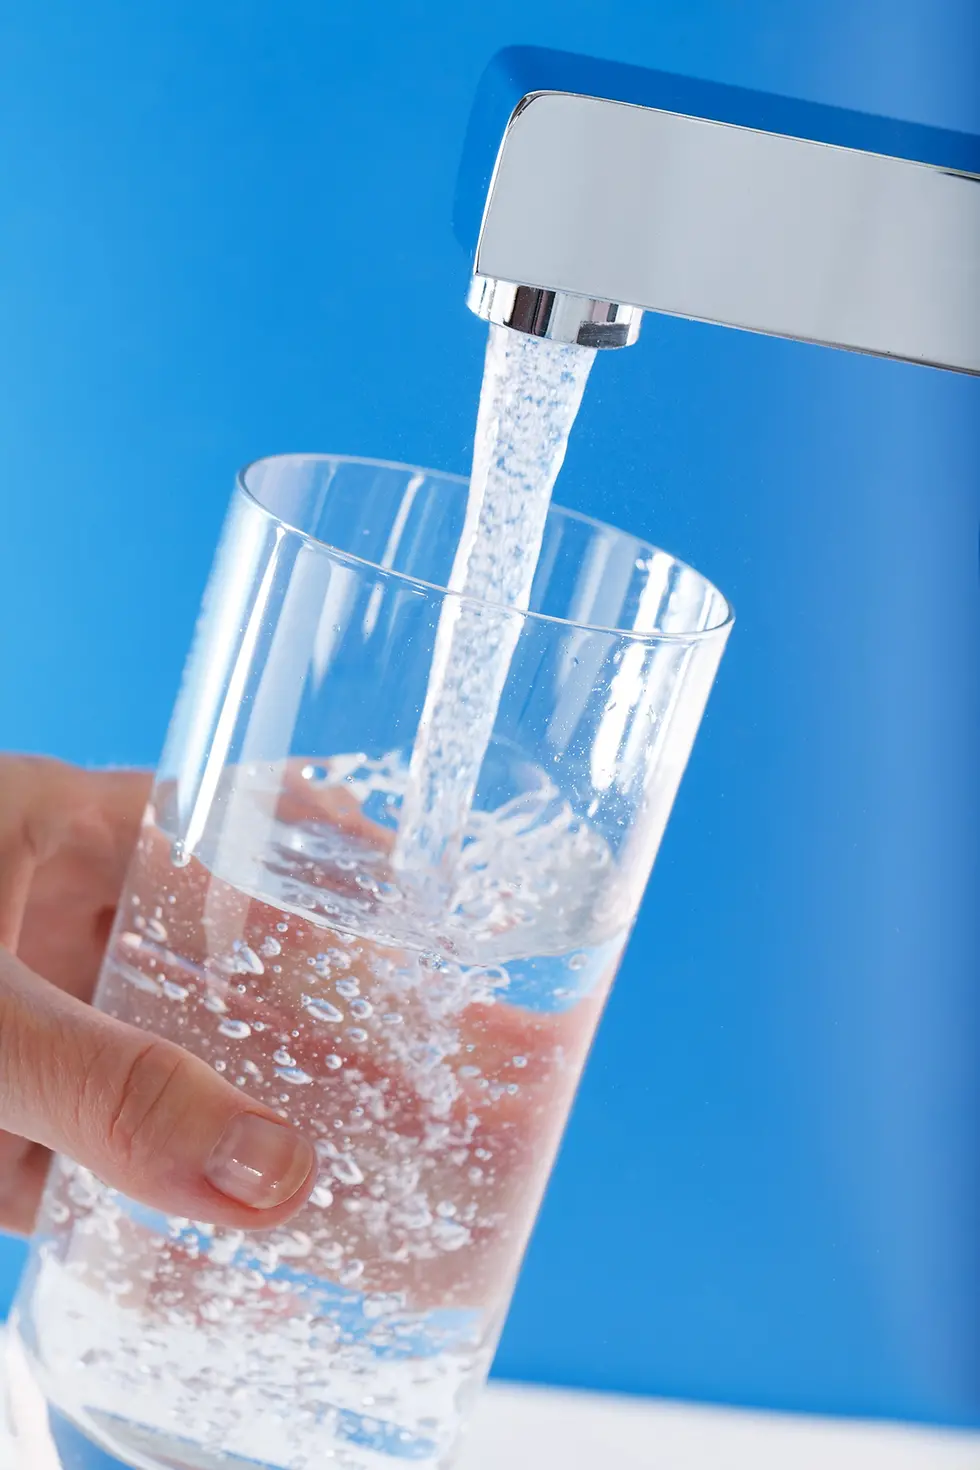 Henkel offre aux fabricants de systèmes de filtration un large portefeuille de solutions de haute performance - par exemple pour le traitement de l'eau.